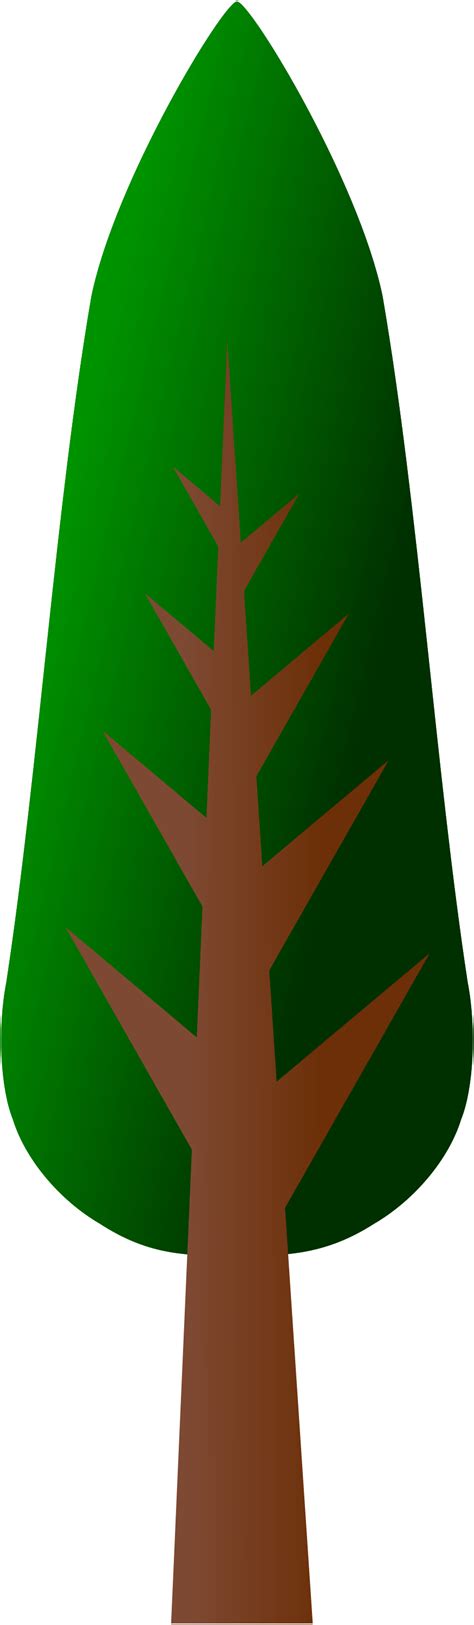 Clipart tall tree